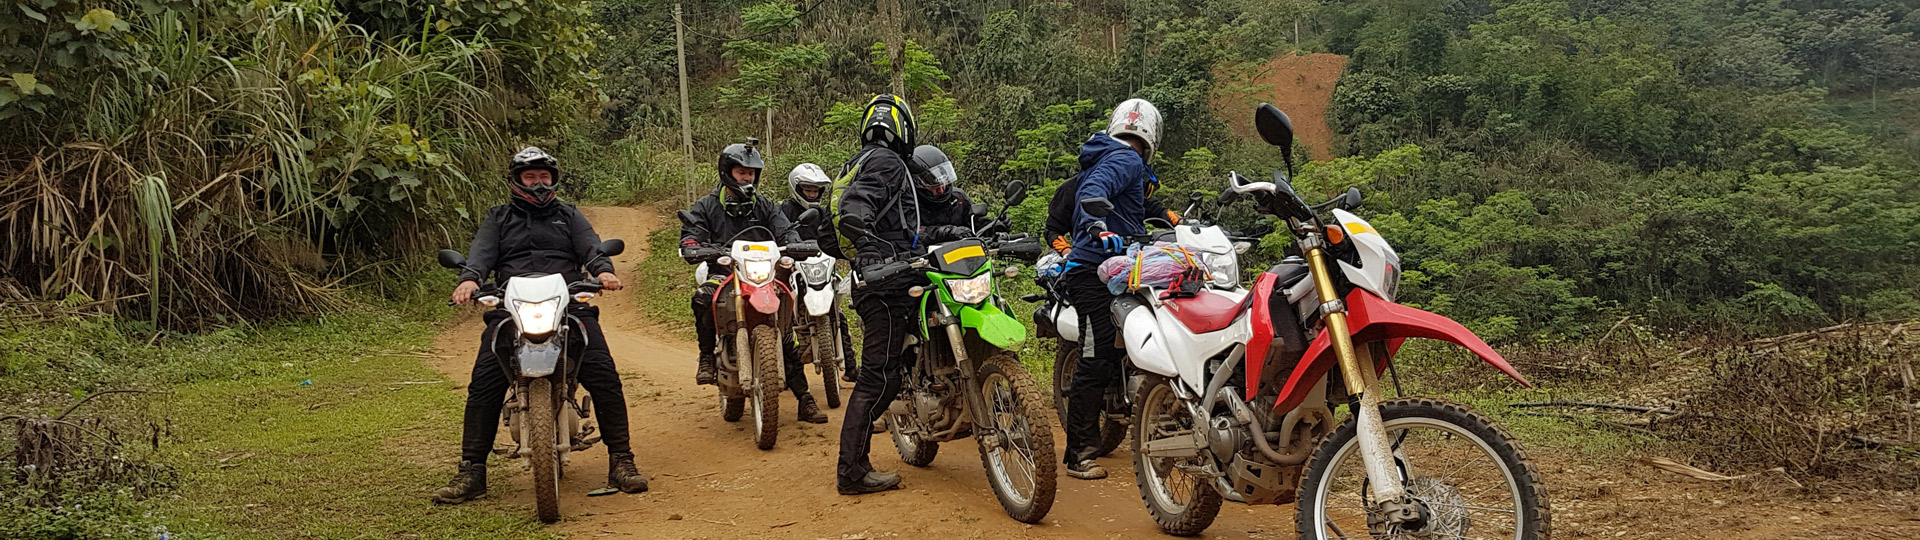 Hanoi Easy Rider Tours 4